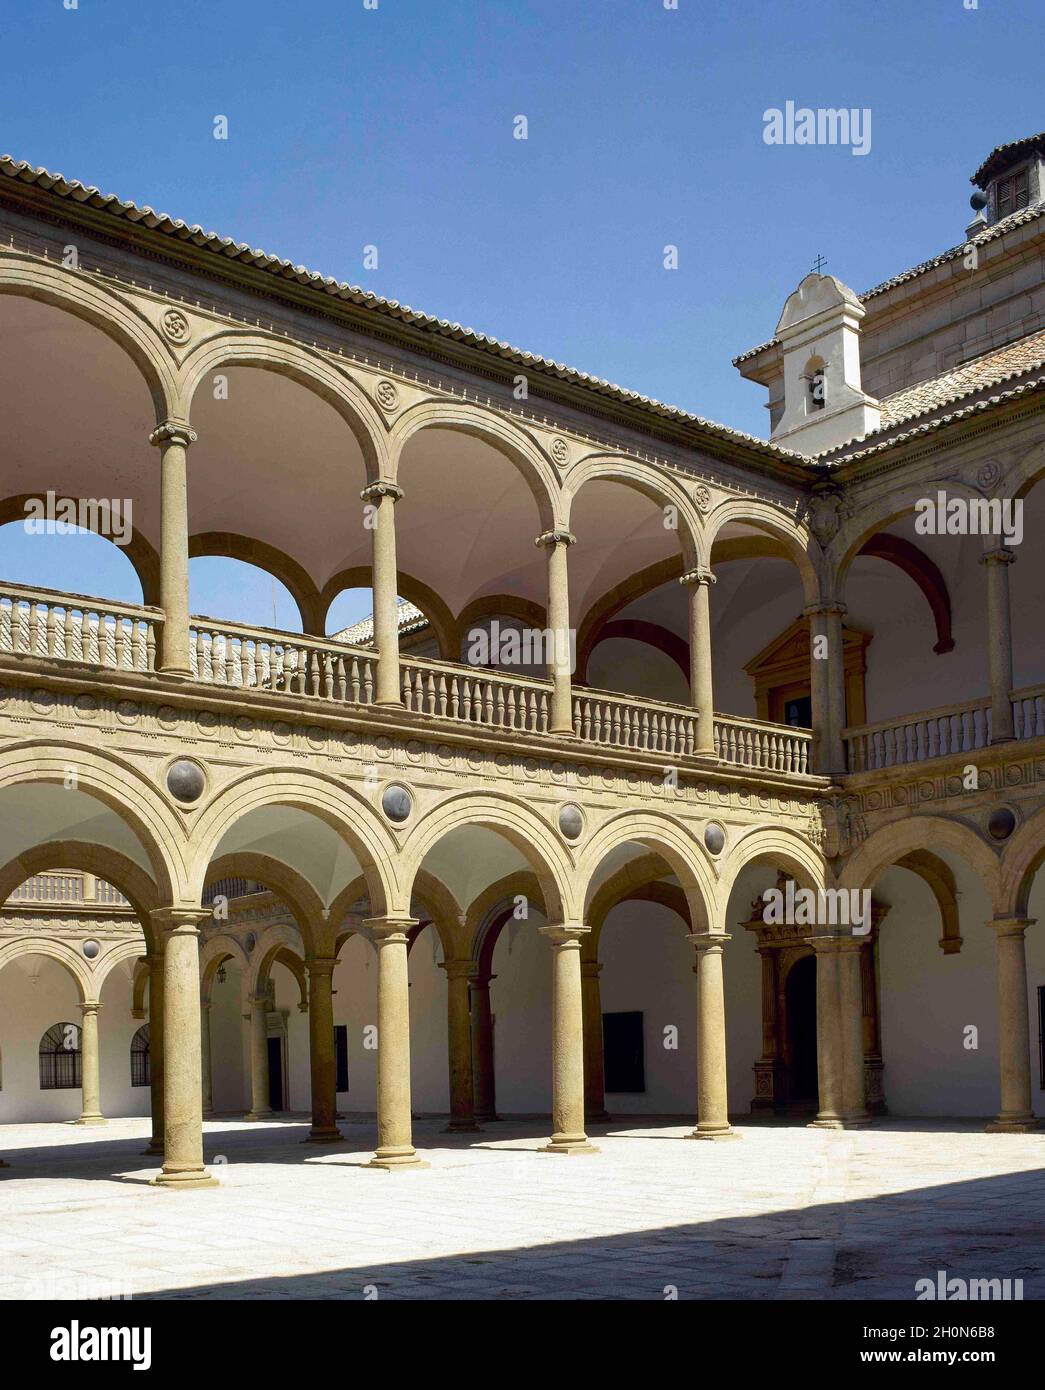 Spanien, Kastilien-La Mancha, Toledo. Hospital de Tavera oder Hospital de San Juan Bautista. Es wurde im Renaissance-Stil zwischen 1541 und 1603 von orde erbaut Stockfoto